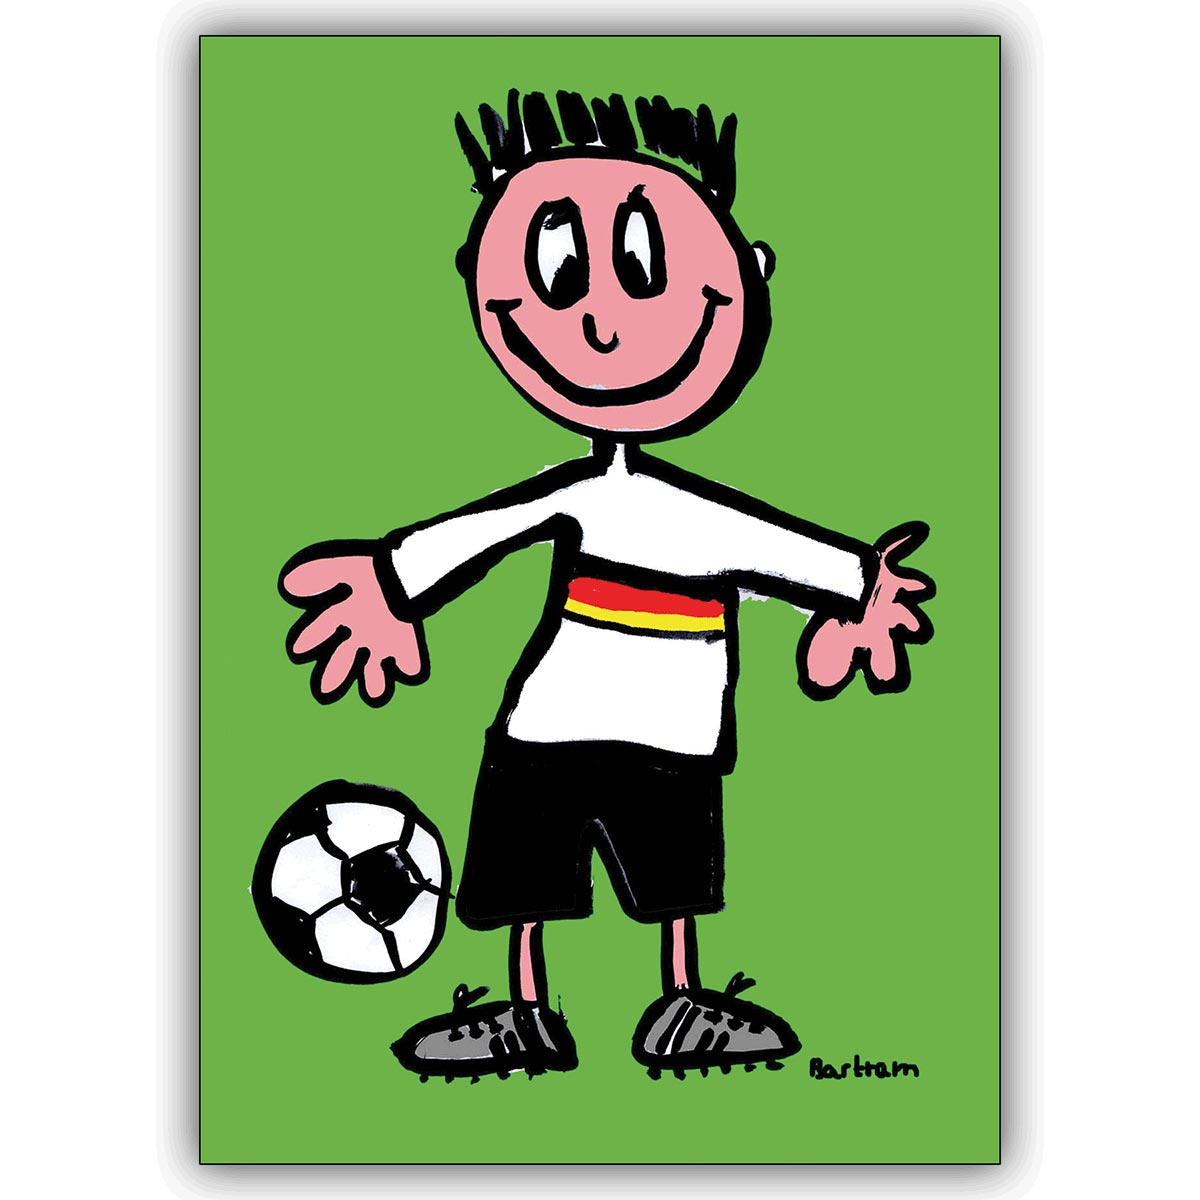 Süße illustrierte Fußballer Gruß, Gratulationskarte für echte Kerle